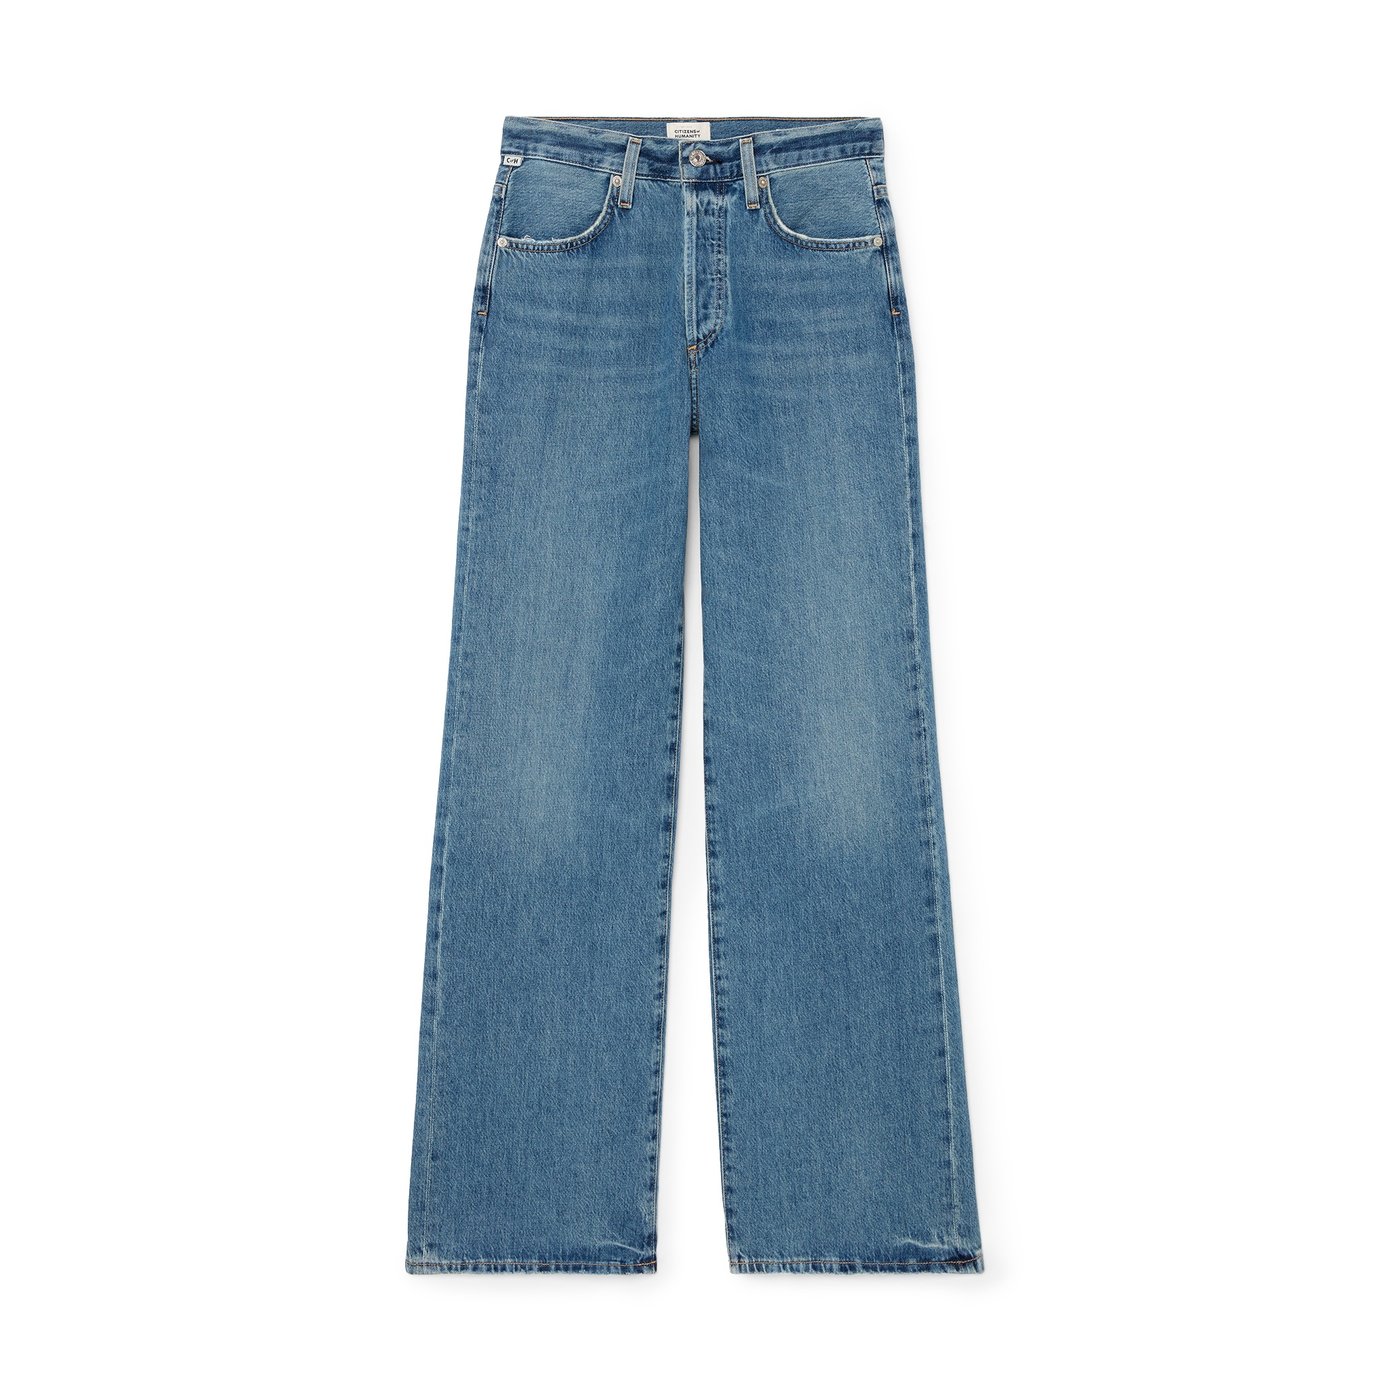 Pantalon extra large blue-jean : Denim Lengha Pants [wP0504